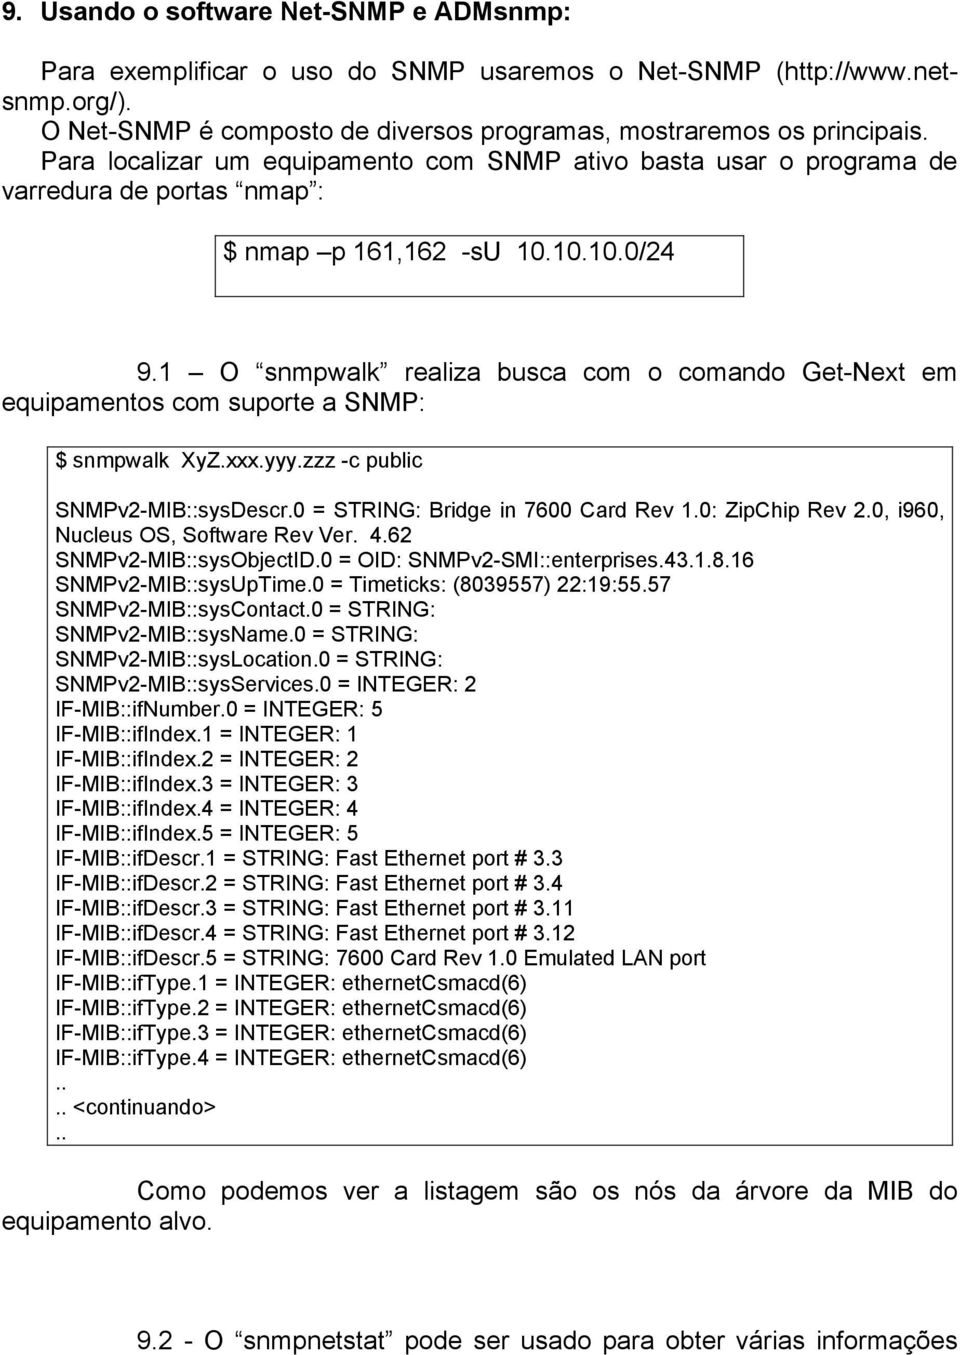 1 O snmpwalk realiza busca com o comando Get-Next em equipamentos com suporte a SNMP: $ snmpwalk XyZ.xxx.yyy.zzz -c public SNMPv2-MIB::sysDescr.0 = STRING: Bridge in 7600 Card Rev 1.0: ZipChip Rev 2.